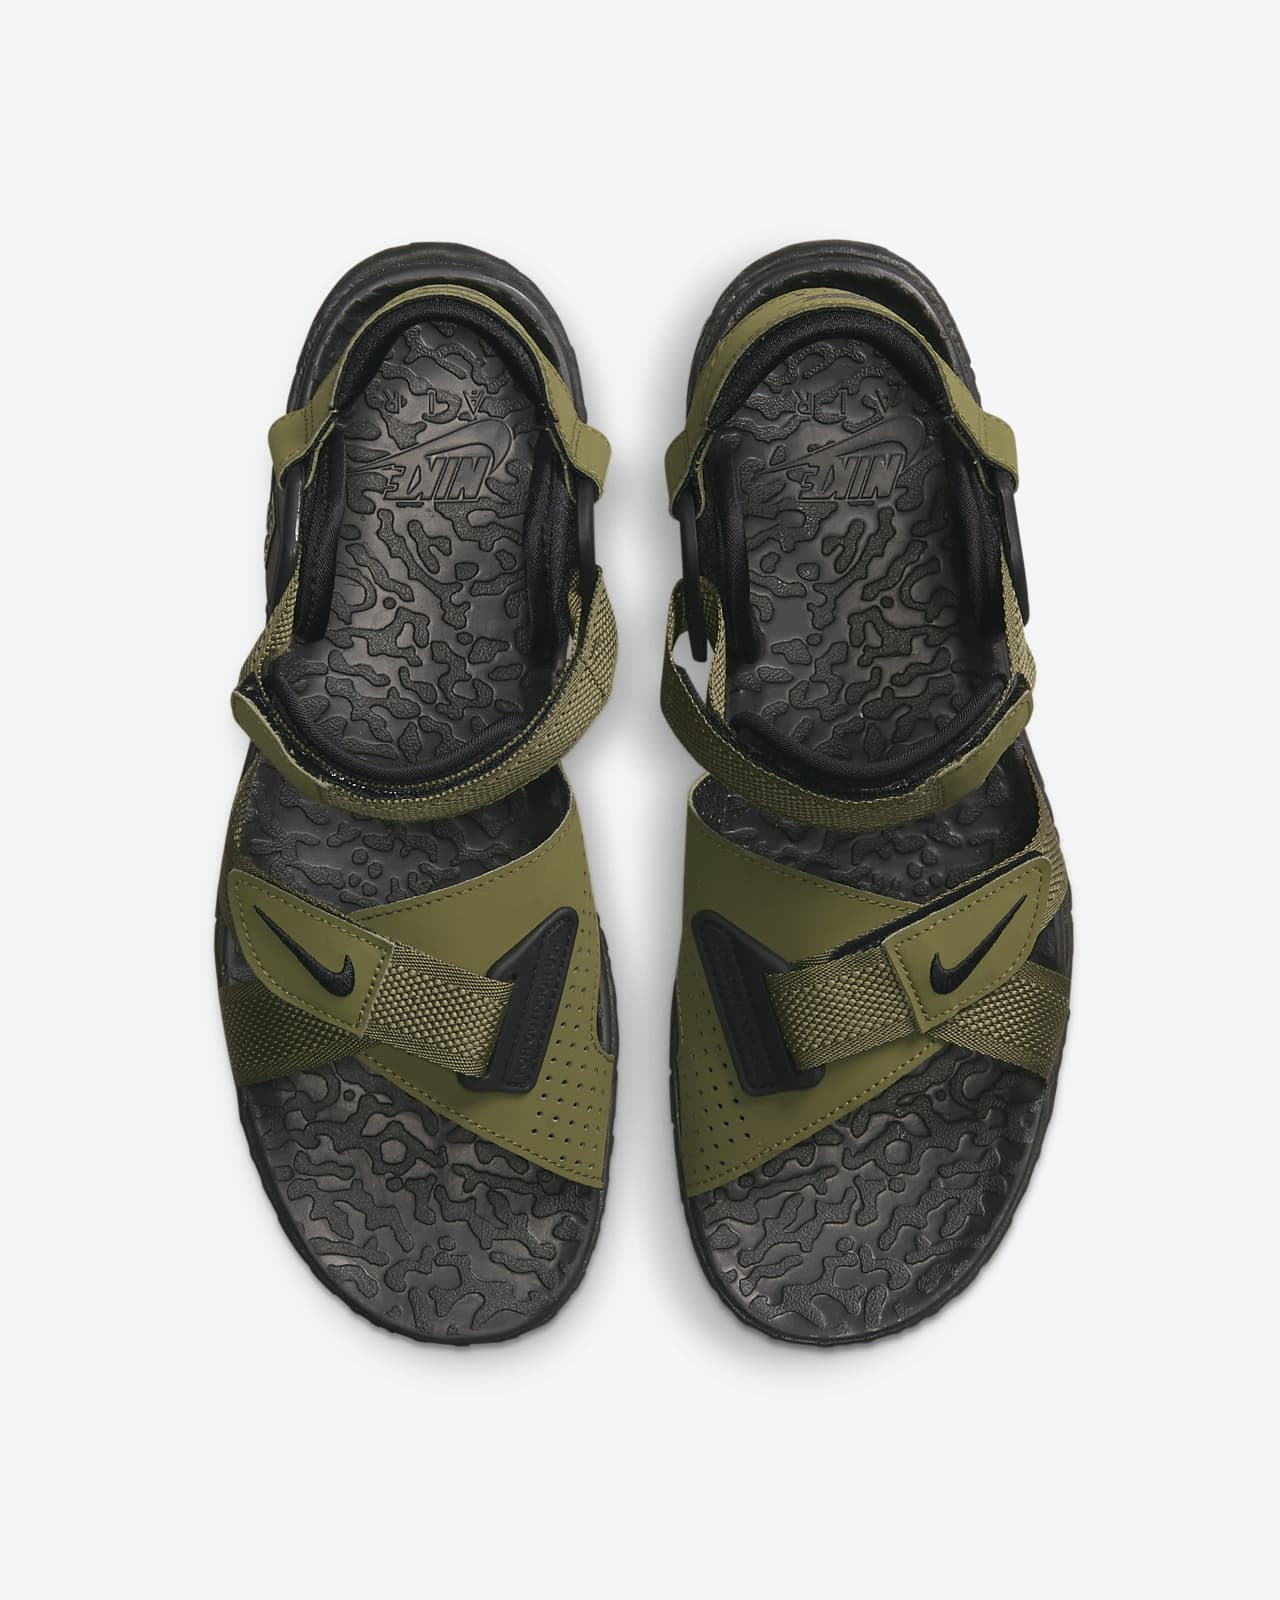 ACG Air Deschutz+ Sandals. Nike AE